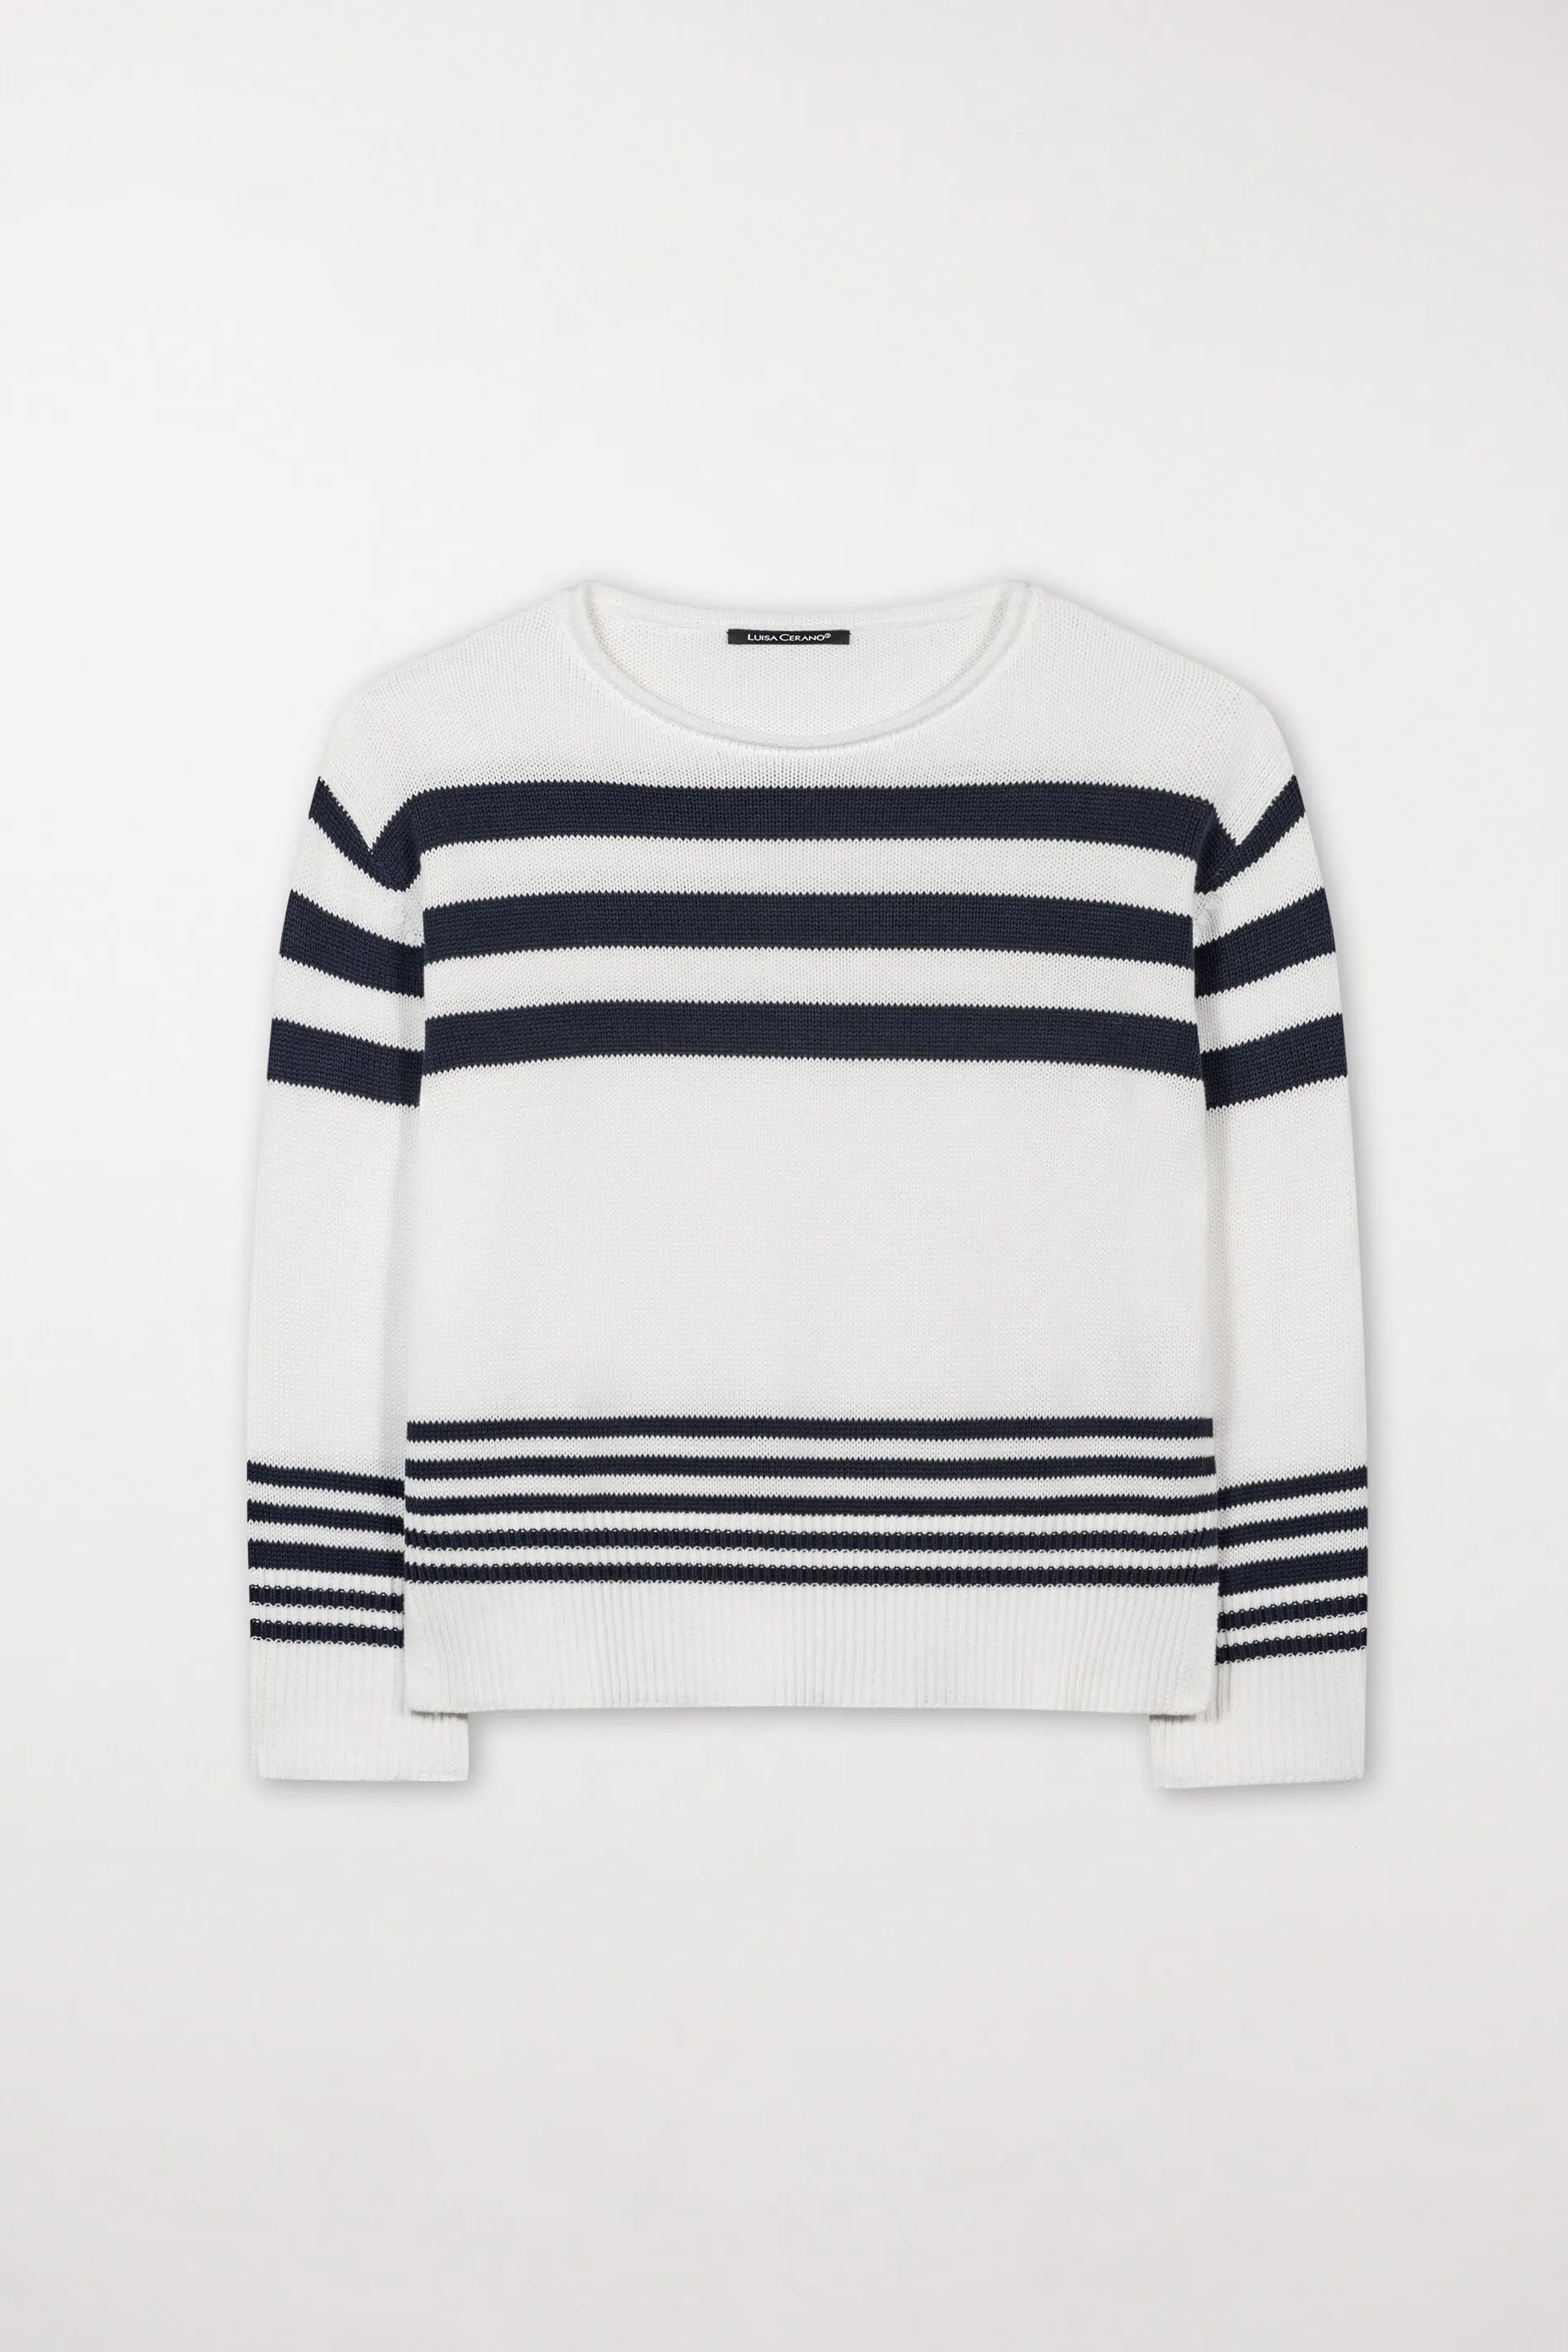 Off White & Dark Navy Striped Cotton Sweater